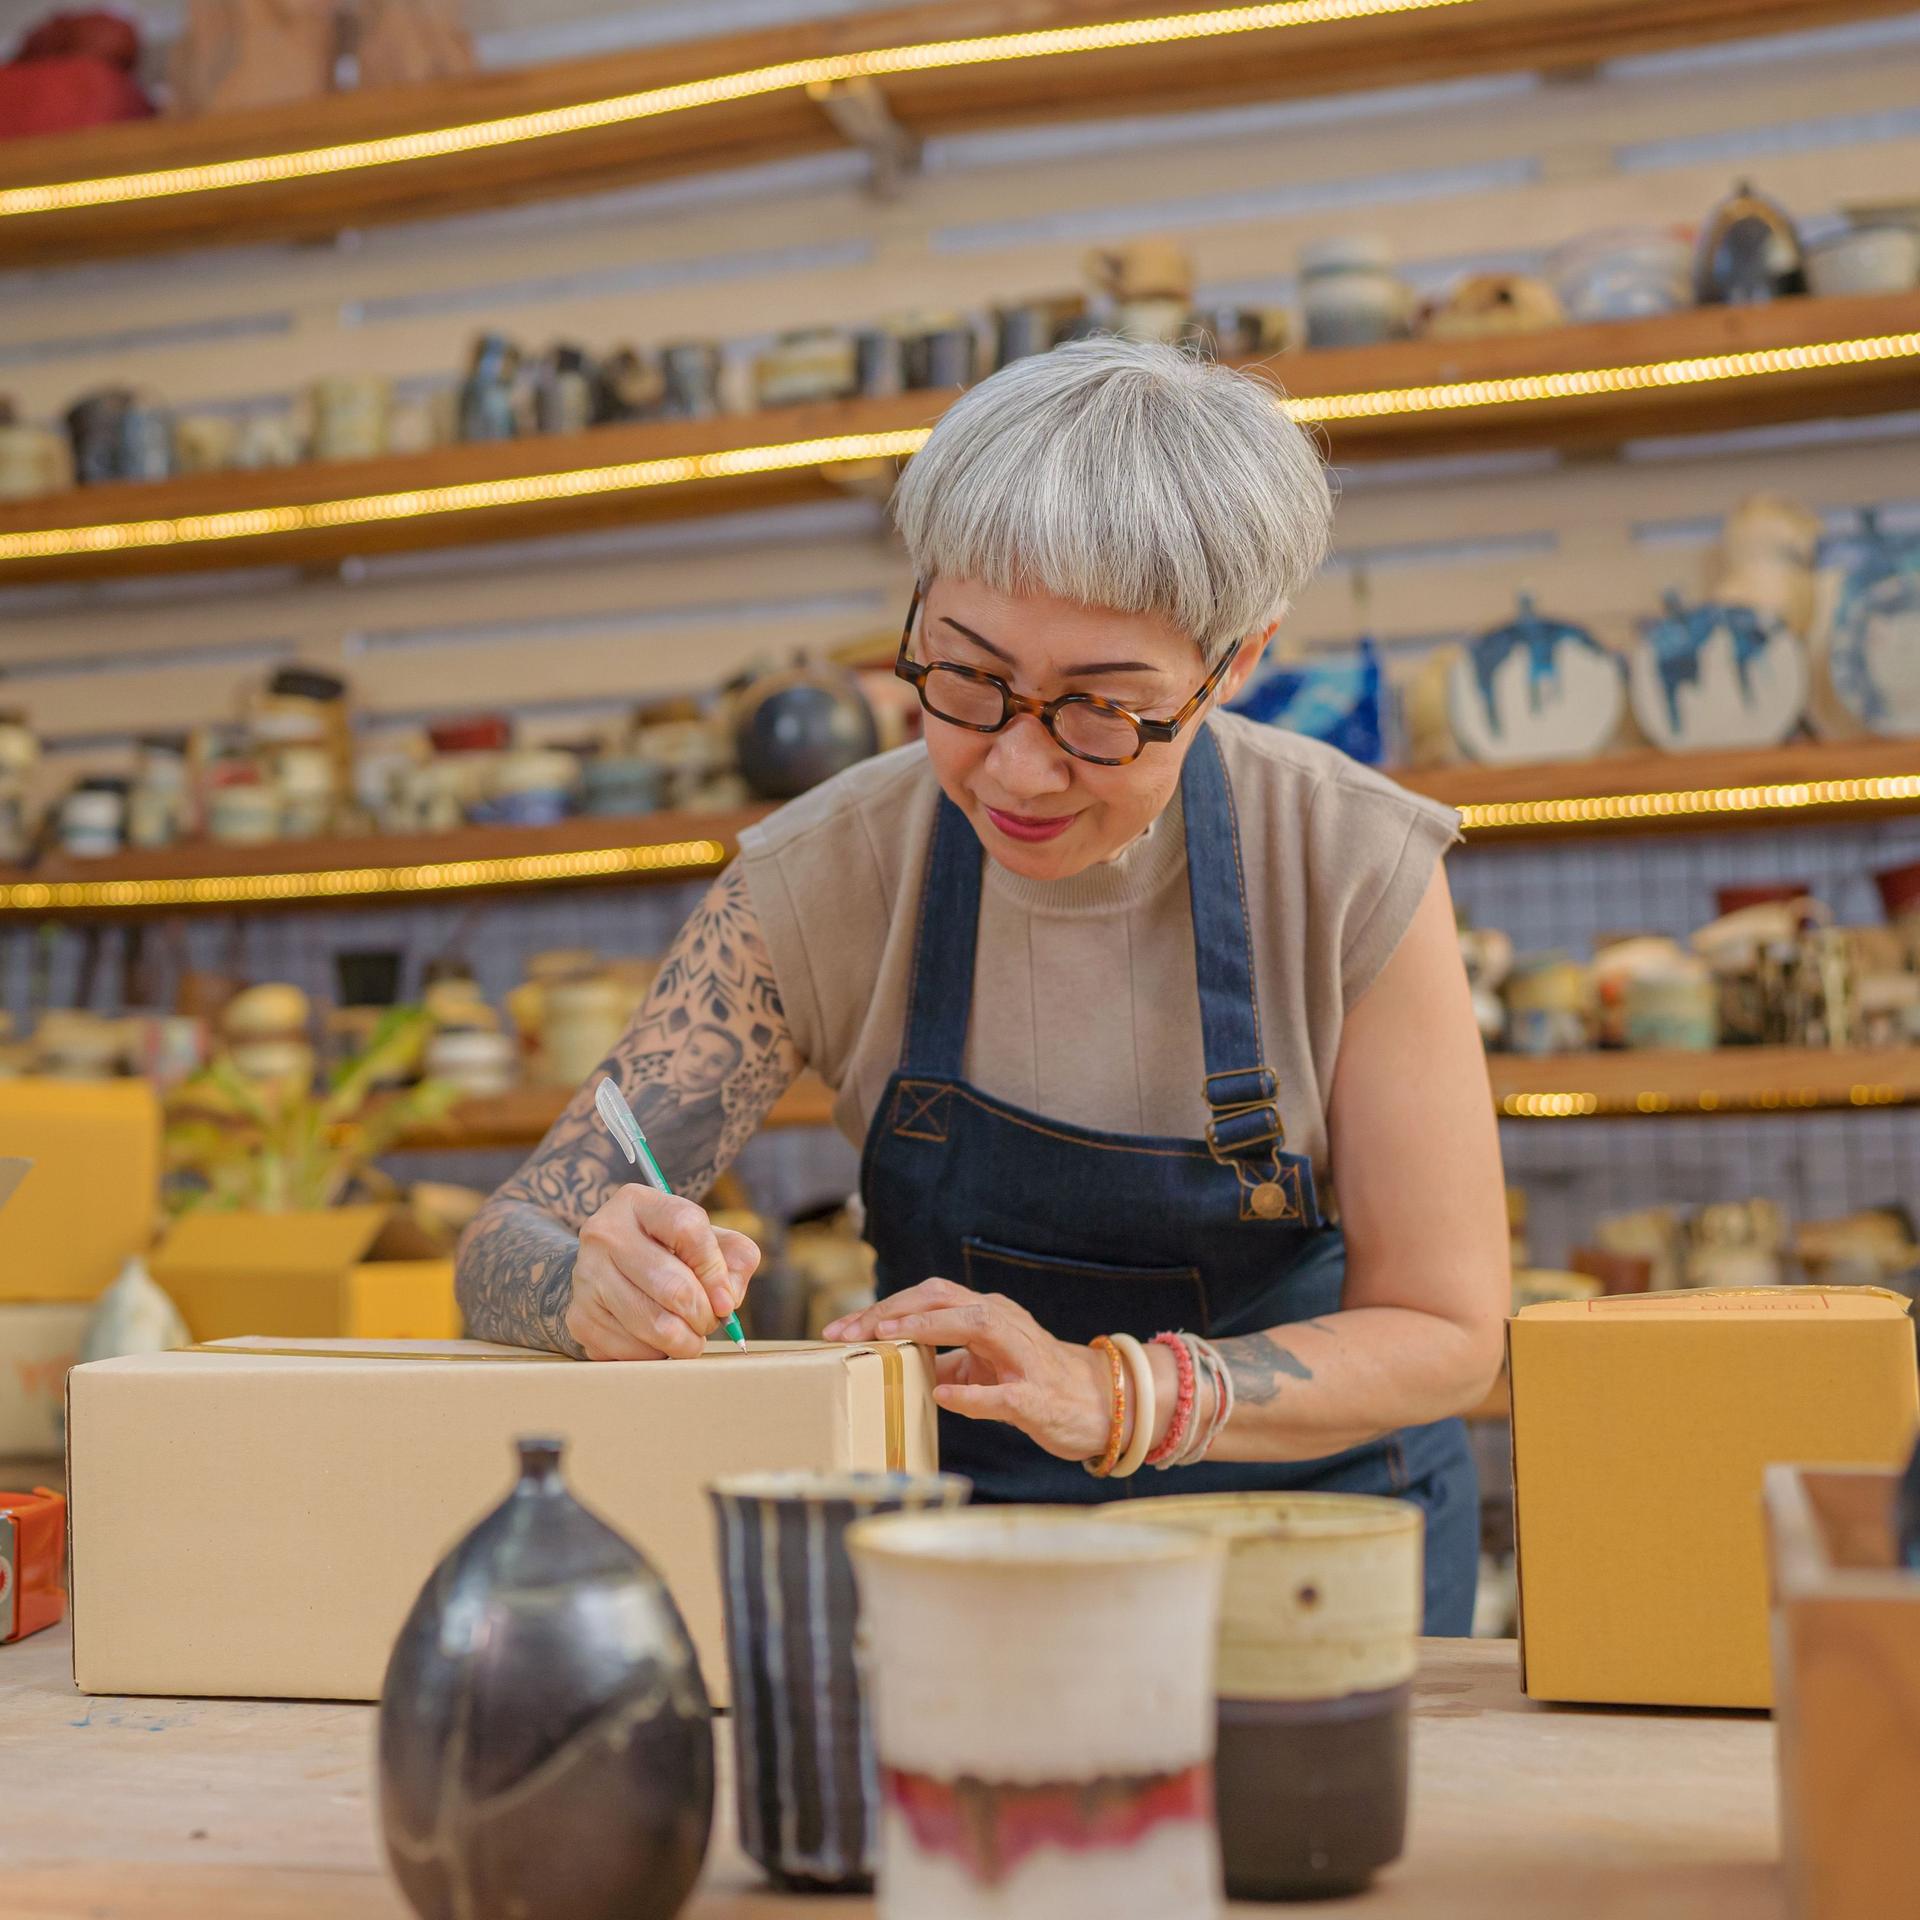 Eine Künstlerin verpackt Keramik-Produkte in ihrem Atelier.